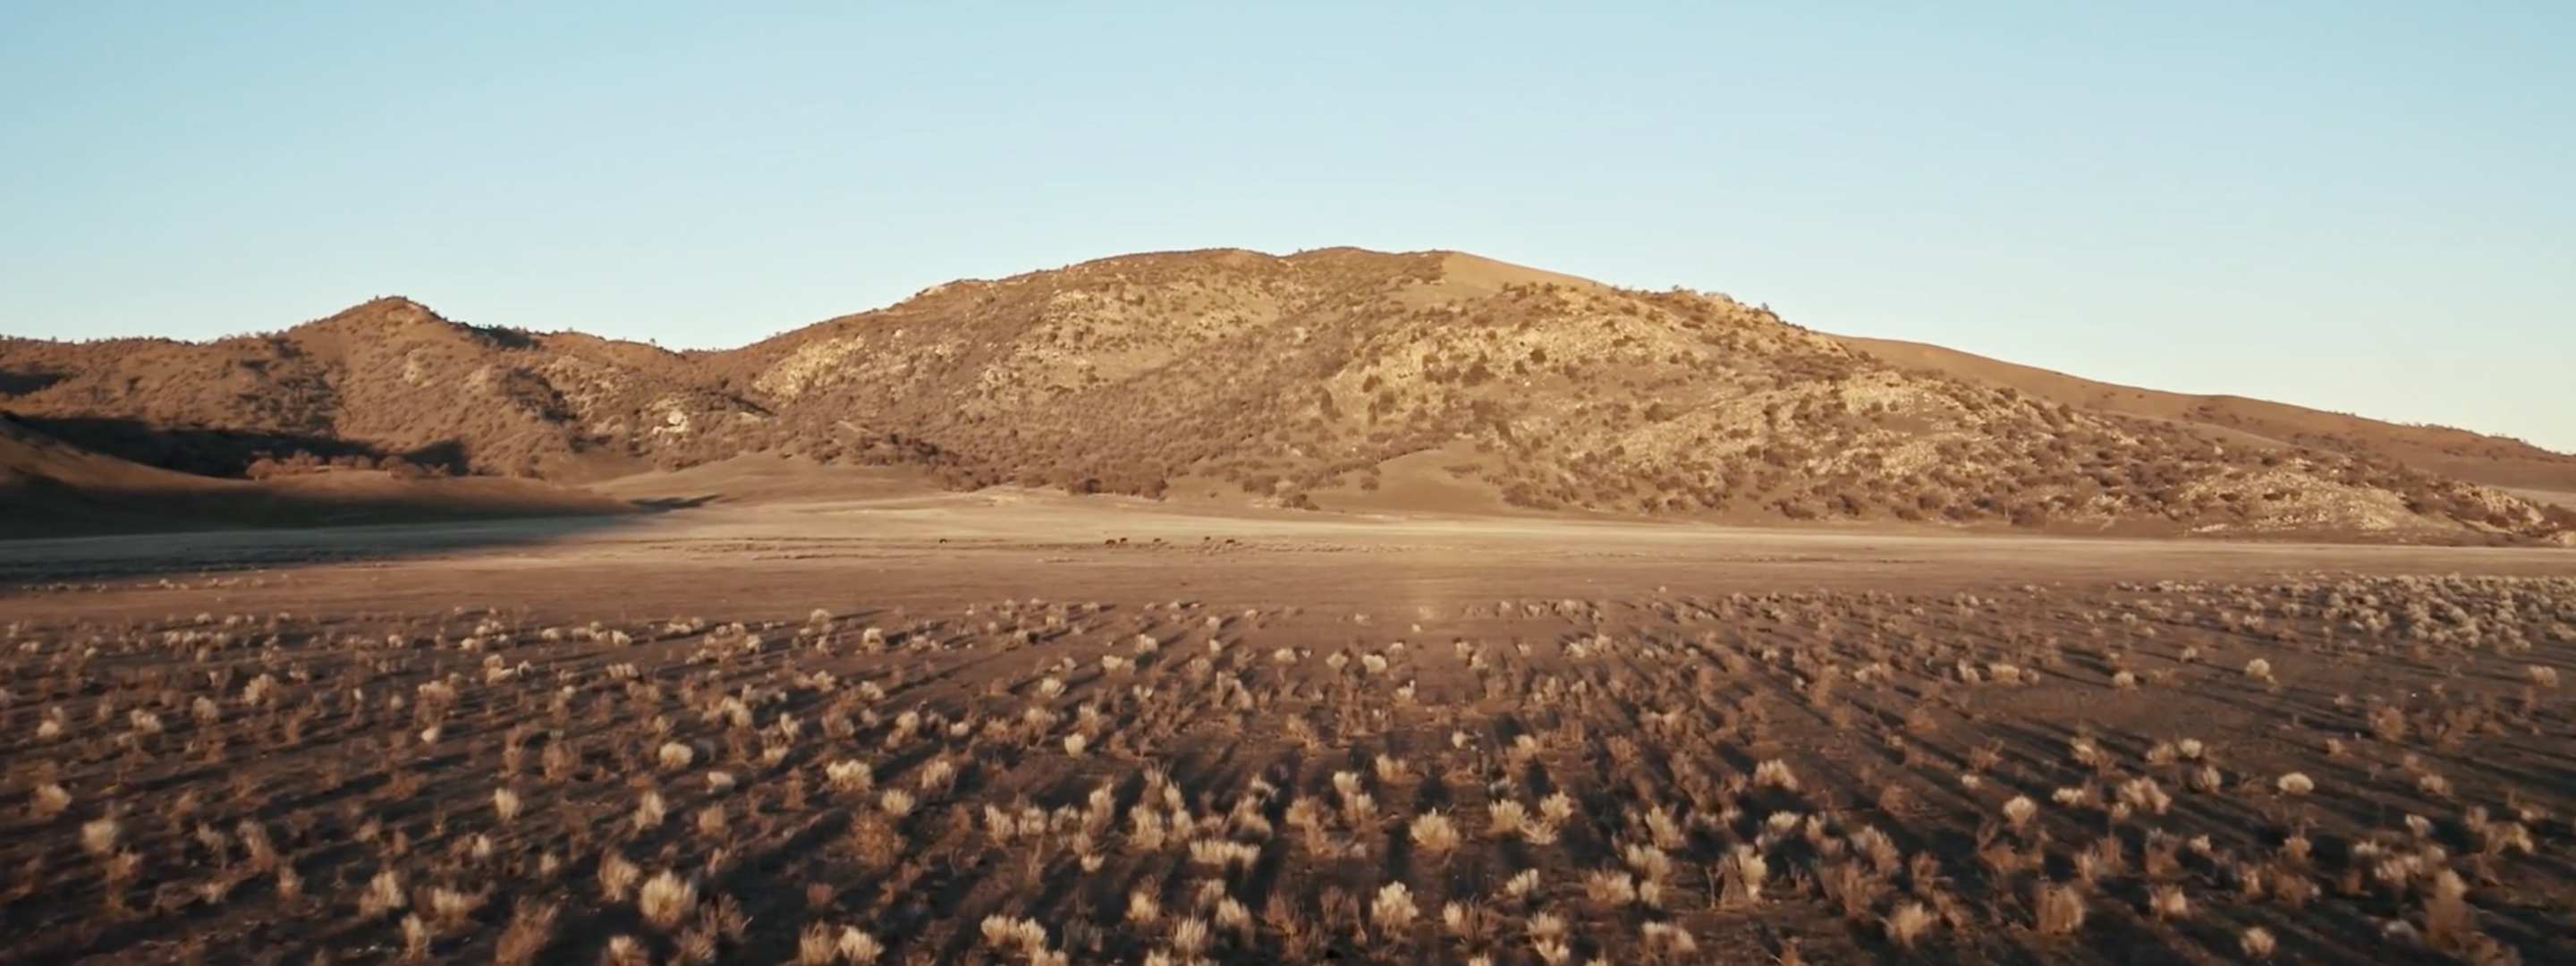 <a href="https://www.capgemini.com/news/inside-stories/mojave-desert/"></a><a href="/mx-es/news/inside-stories/desierto-de-mojave/">El desierto de Mojave: datos de tortugas y neumáticos</a>